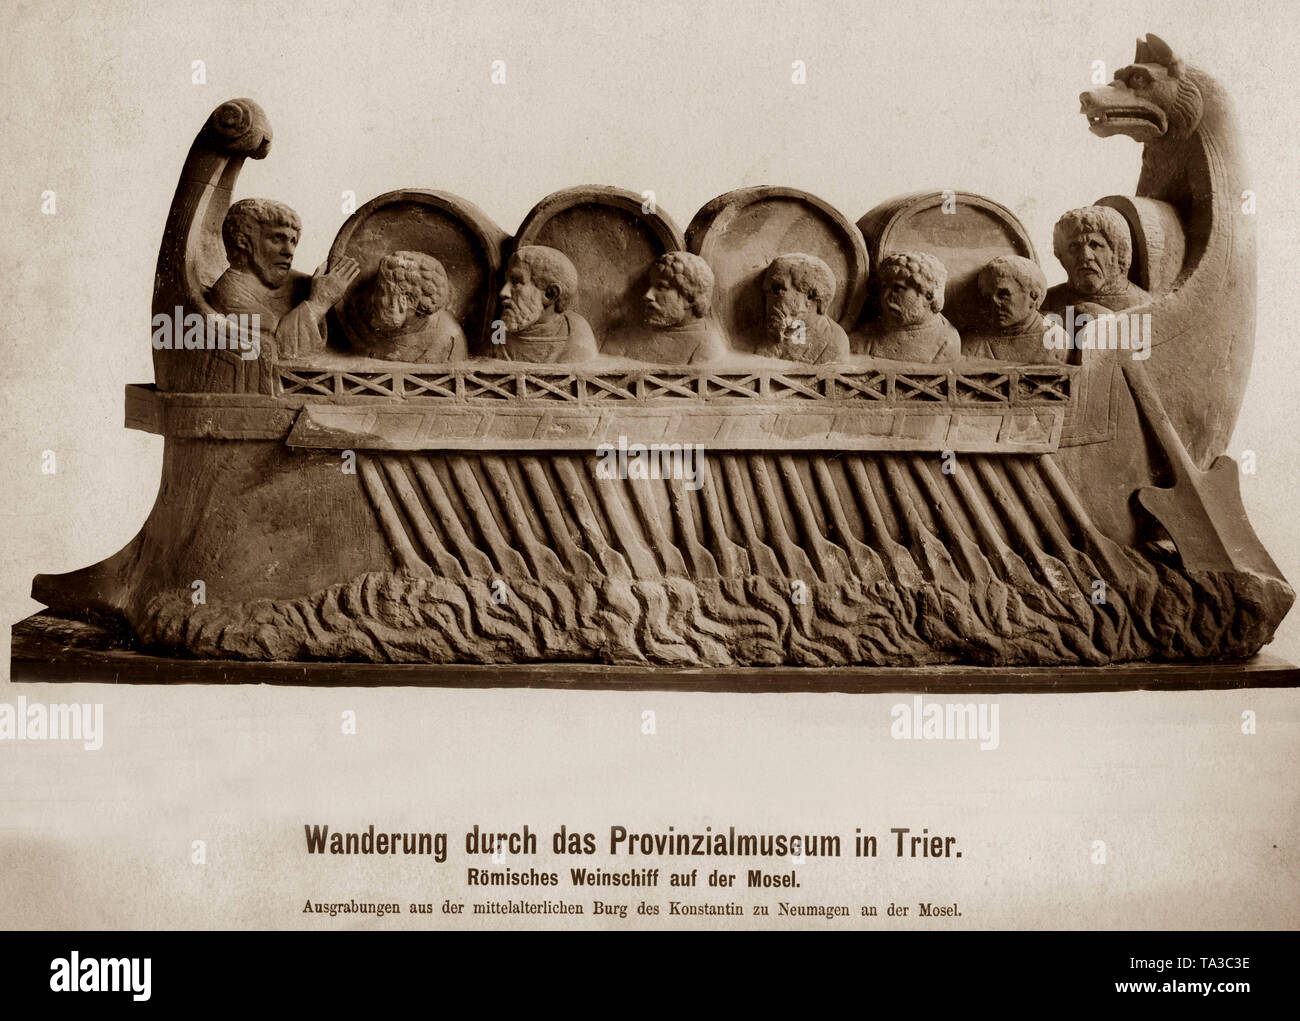 Il vino Neumagen Nave (Neumagener Weinschiff) è la tomba di un romano mercante di vino. Originariamente, la tomba consisteva di due navi di vino, che sono stati utilizzati in modo simbolico per la professione del defunto. Questa tomba fu trovata nel 1878 in Neumagen durante gli scavi del castello medievale di Konstantin zu Neumagen sulla Mosella. Oggi essa è esposta nel Museo di Stato di Treviri. Foto Stock